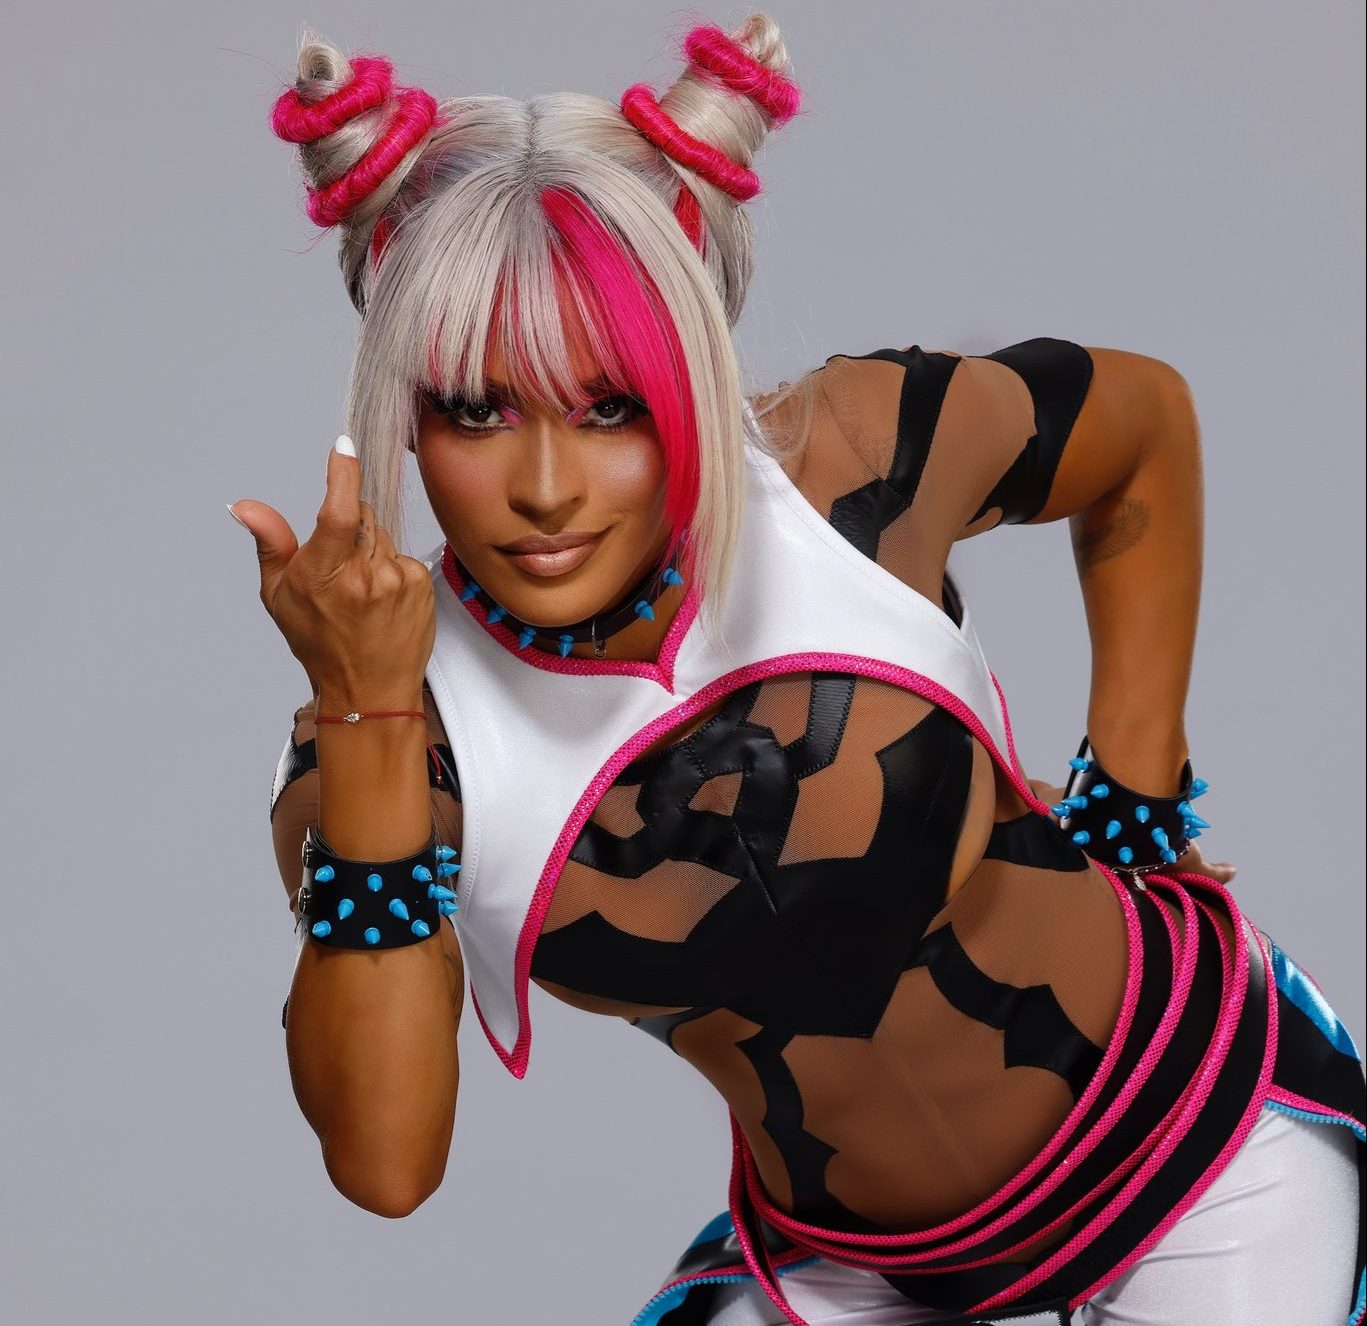 Street Fighter 6 Announces WWE Wrestler Zelina Vega As Color Commentary  Option - mxdwn Games